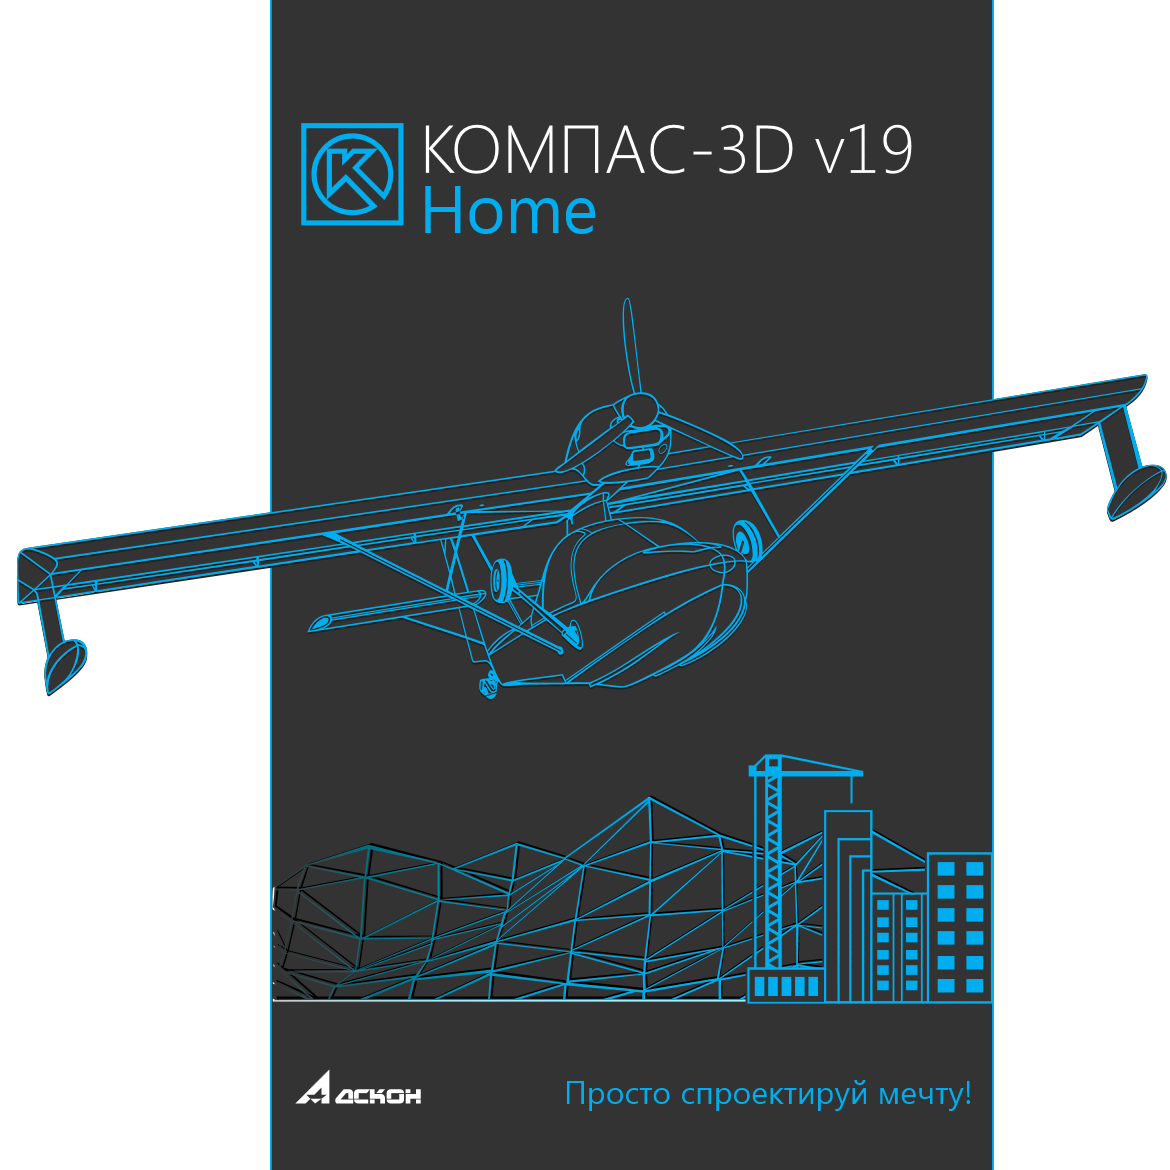 КОМПАС-3D v17 Home Обновление с КОМПАС-3D Home v17 до v19 АСКОН